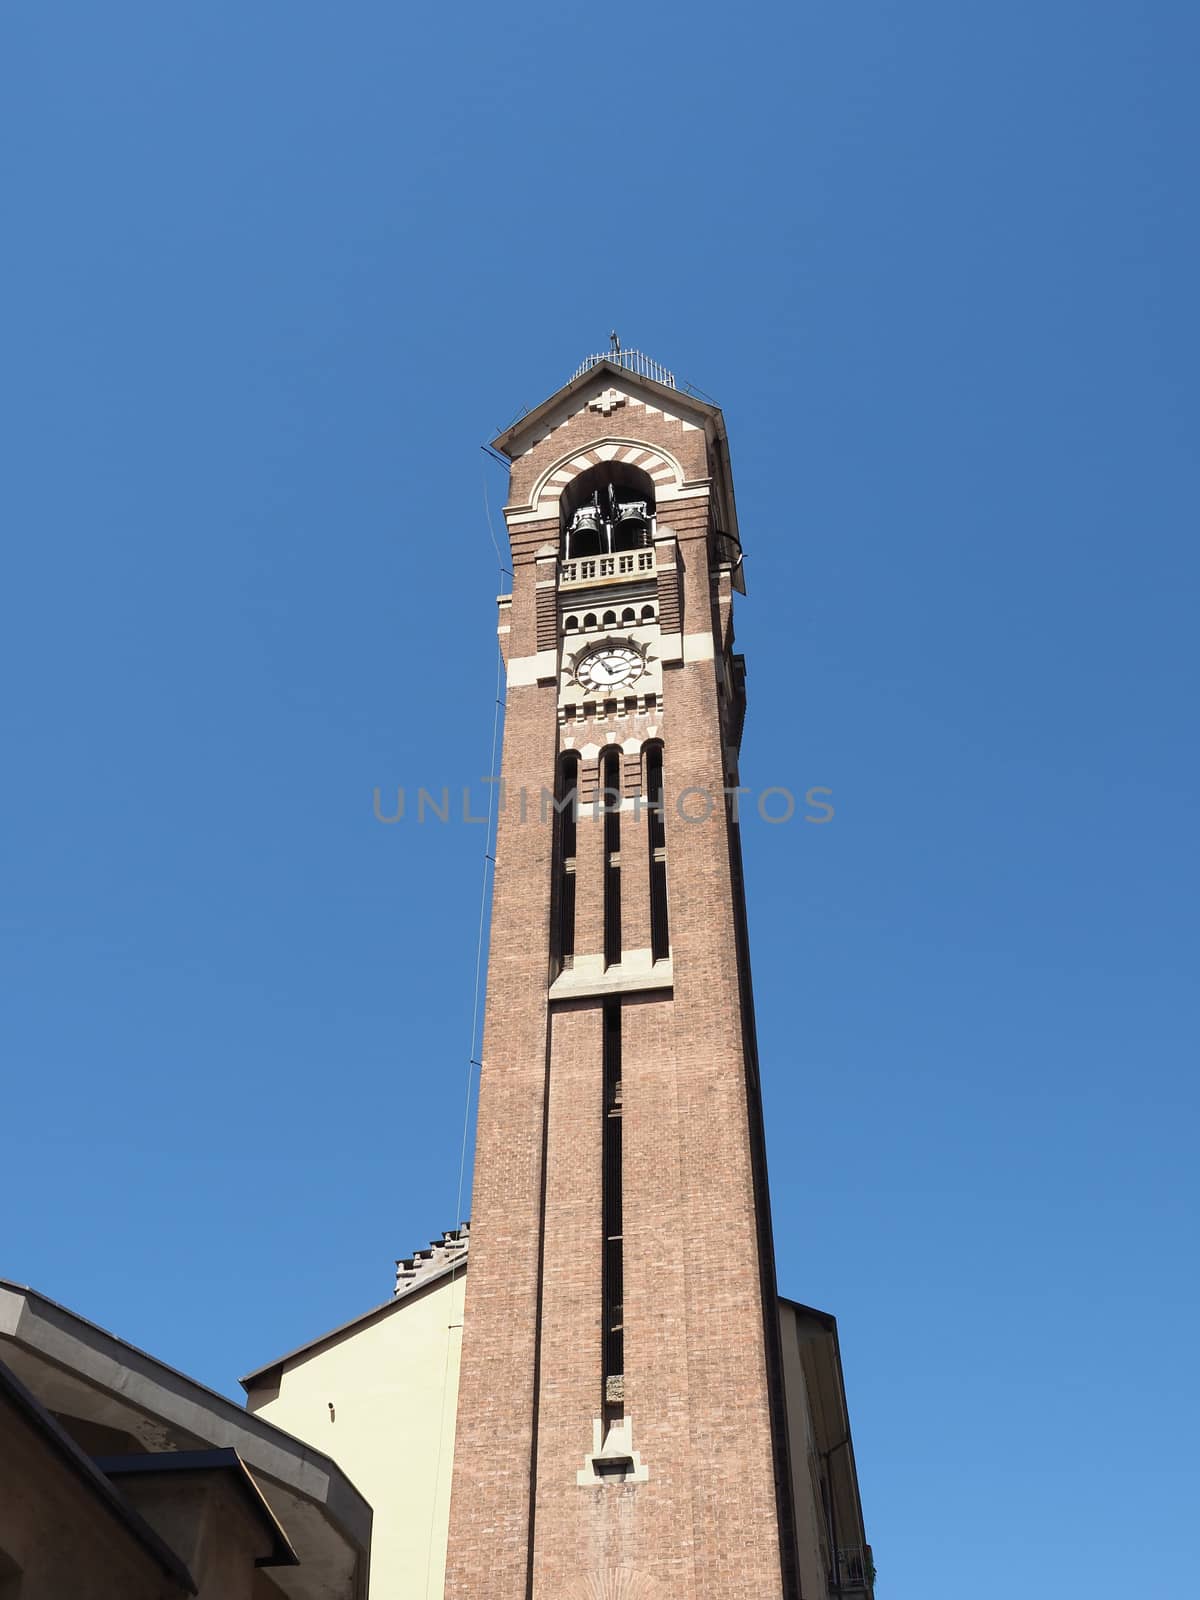 Steeple of Chiesa di San Giuseppe church in Turin, Italy